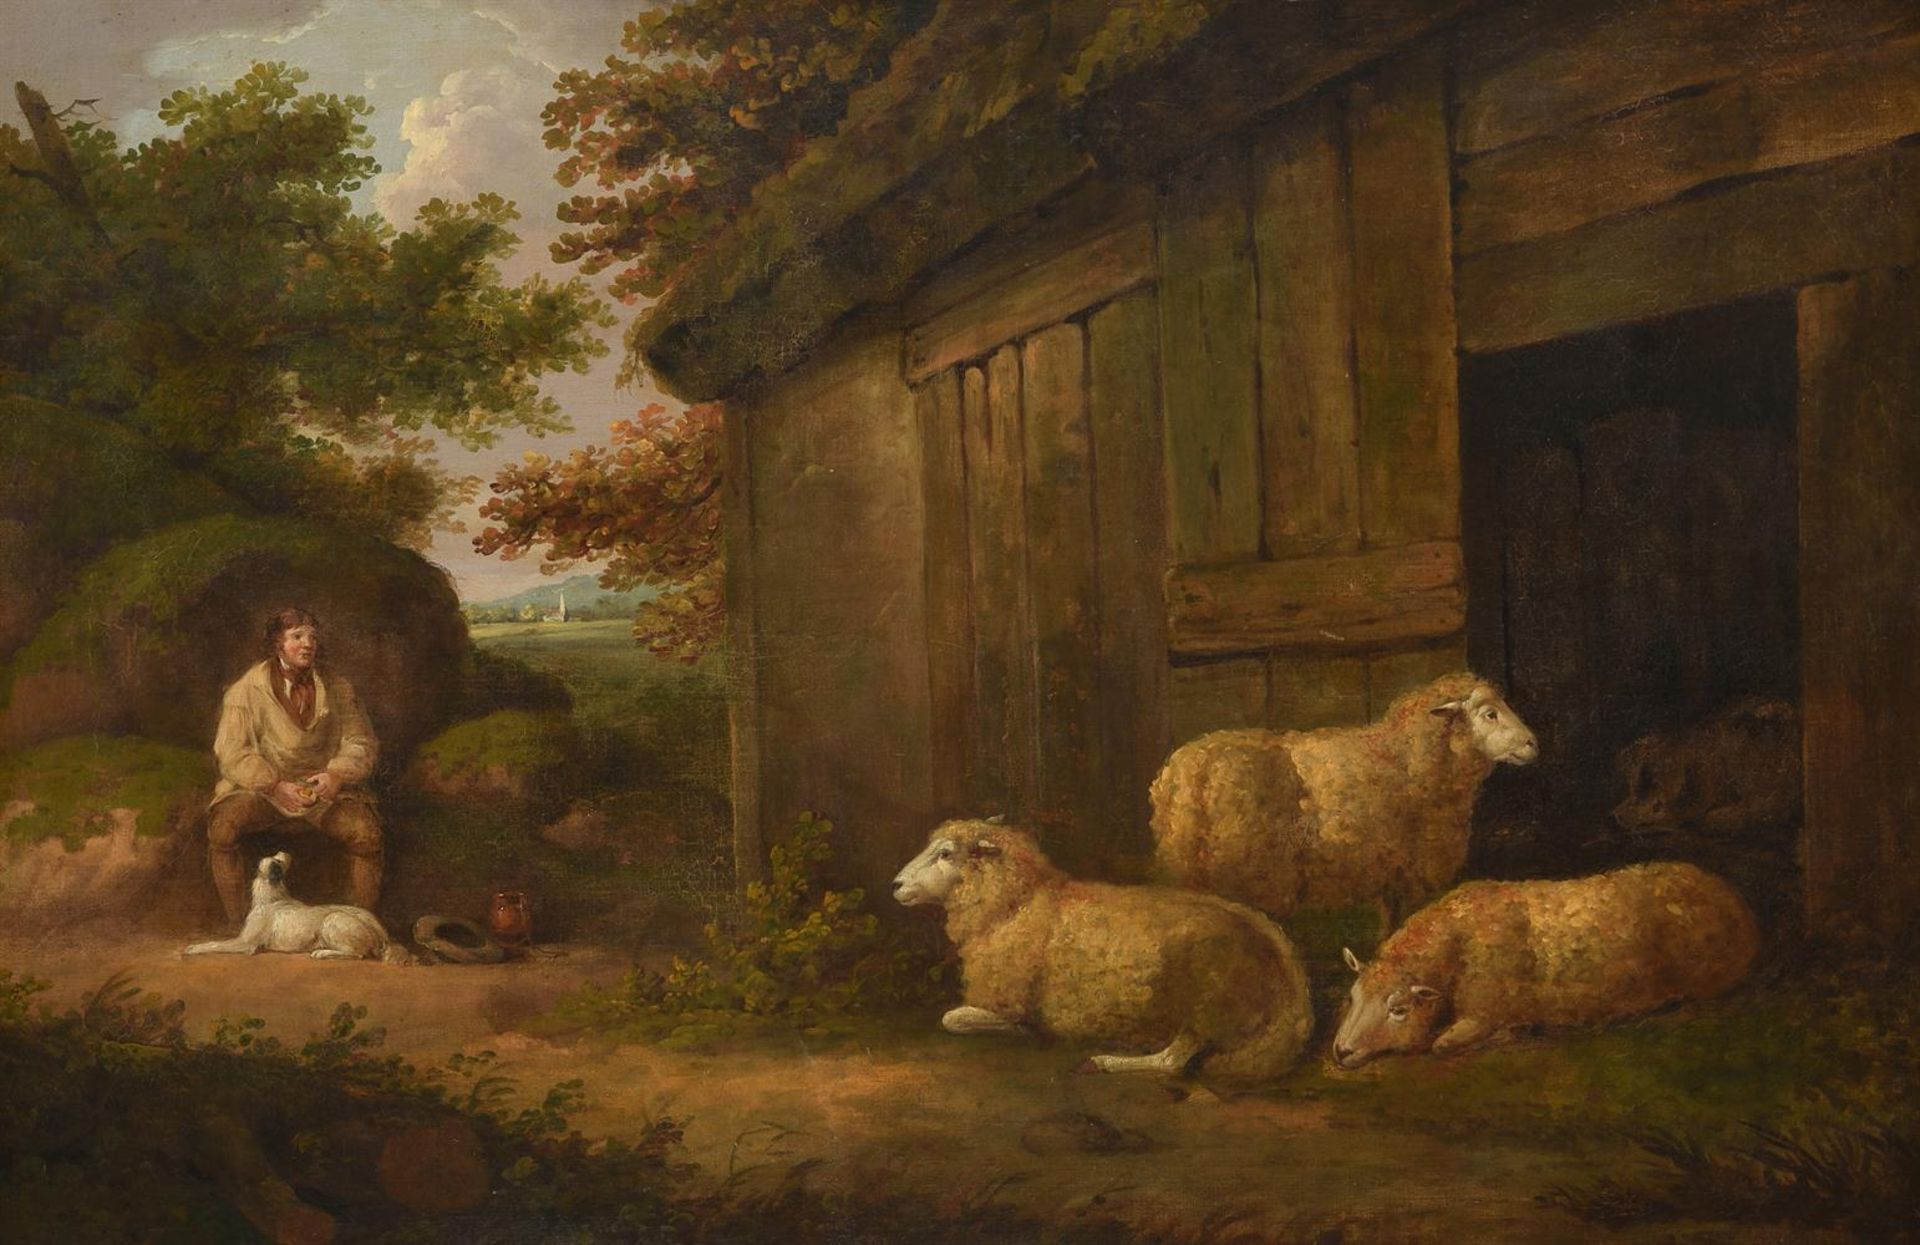 GEORGE MORLAND (BRITISH 1763-1804), WATCHING THE SHEEP